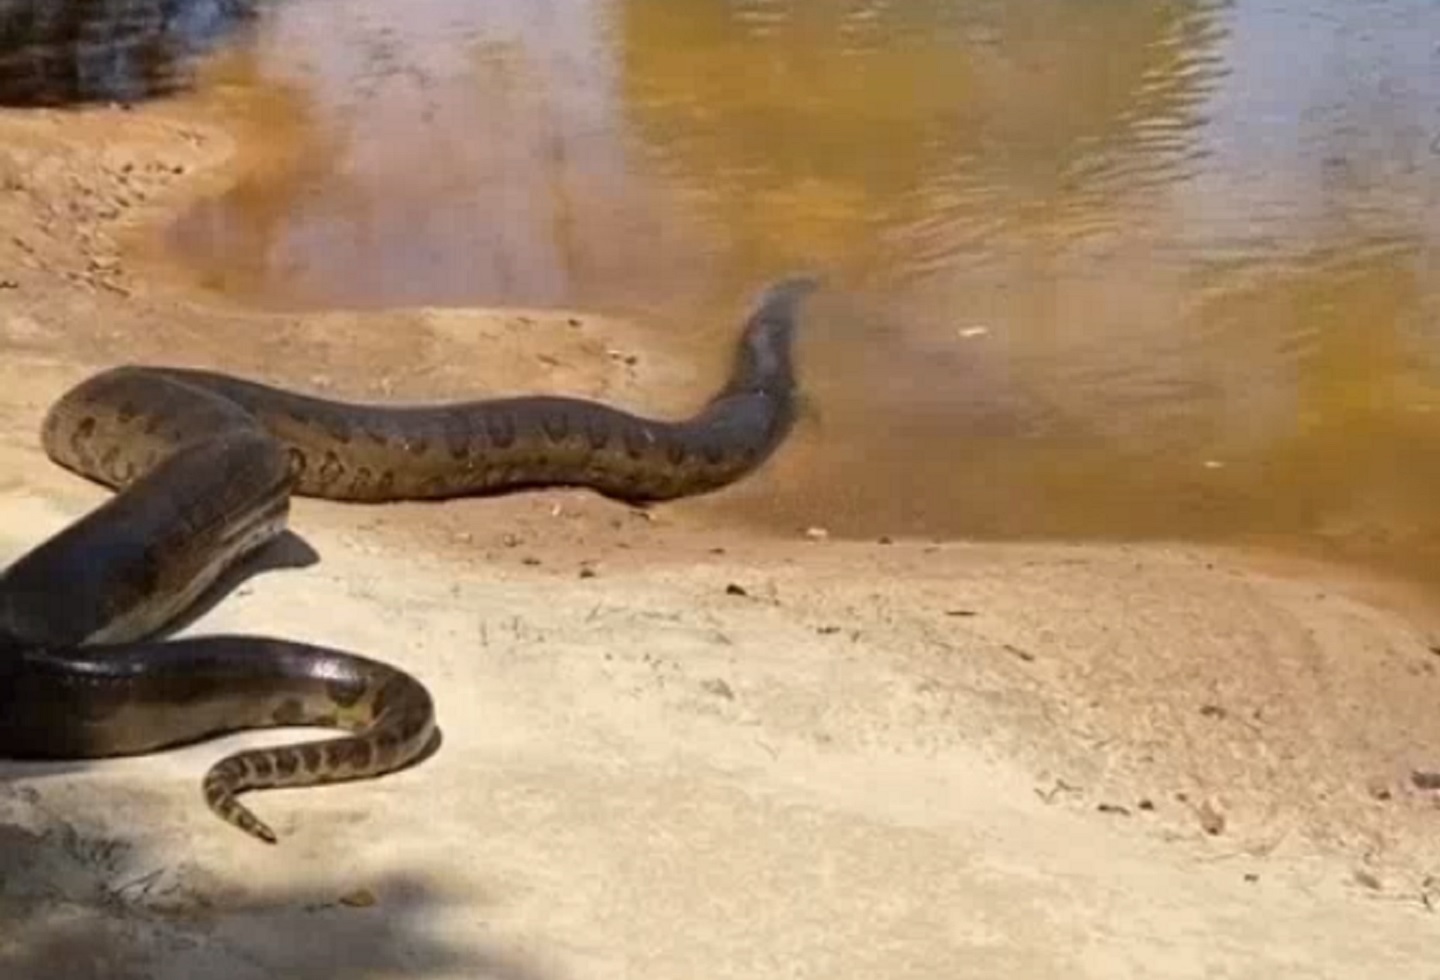  En Apiay dejan libre anaconda para devorar animales en superpoblación